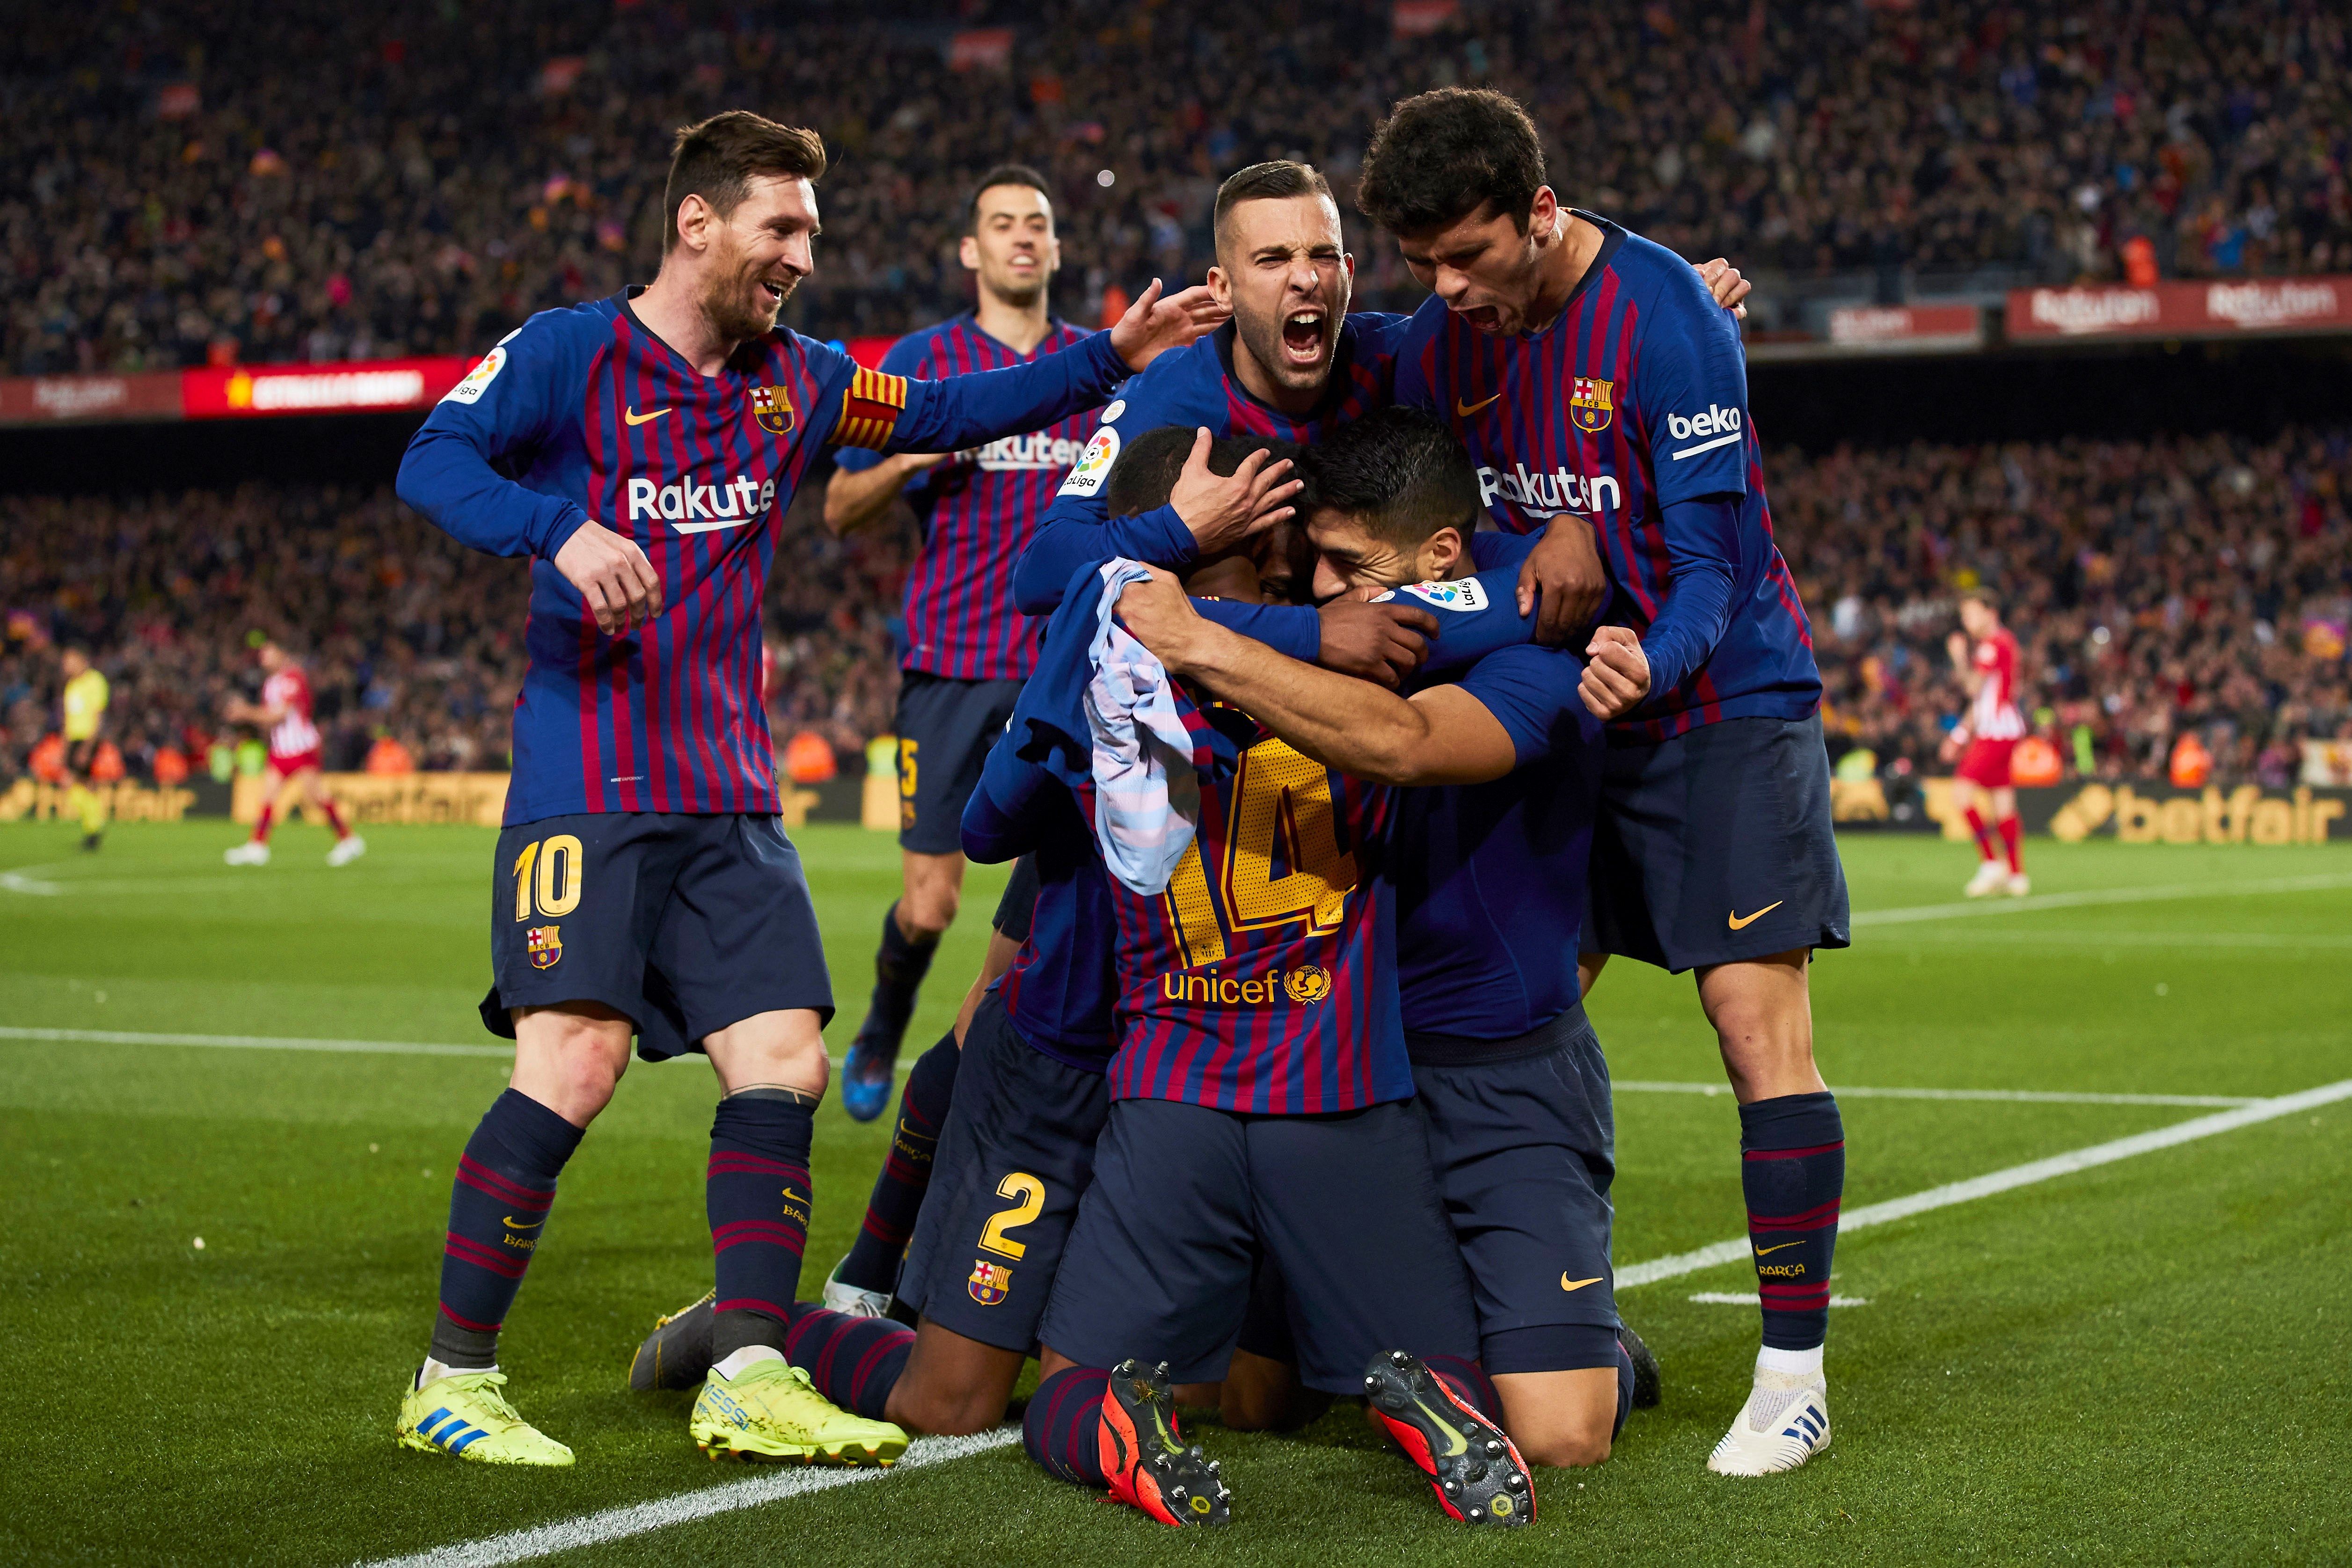 Los jugadores del FC Barcelona celebran el primer gol del equipo blaugrana durante el encuentro correspondiente a la jornada 31 de primera división que han disputado esta noche frente al Atlético de Madrid en el estadio del Camp Nou, en Barcelona. (Foto Prensa Libre: EFE)